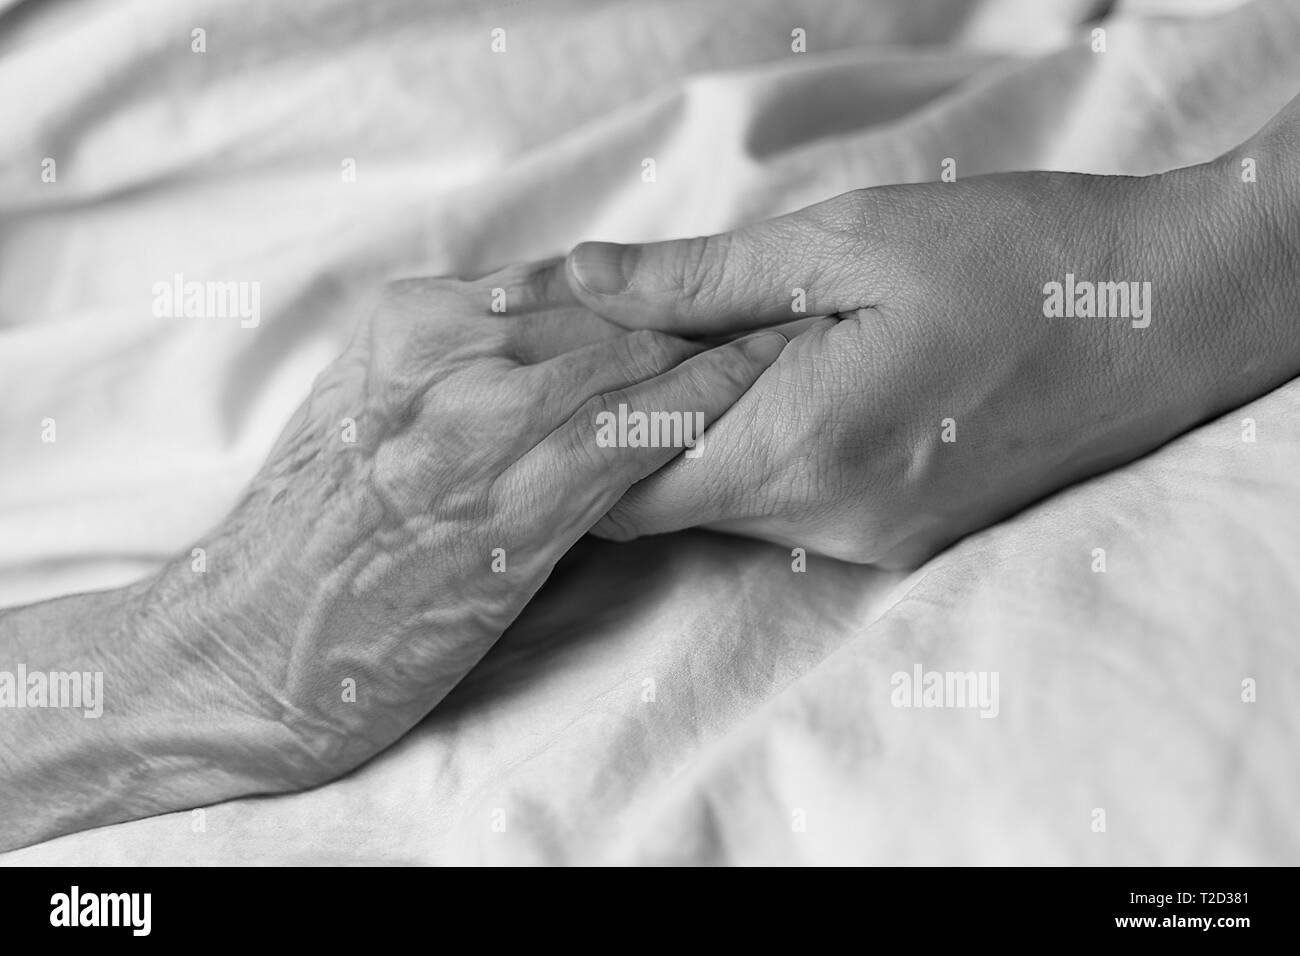 Eine junge Frau die Hand einer alten Frau in einem Krankenhausbett, in Schwarz und Weiß Stockfoto